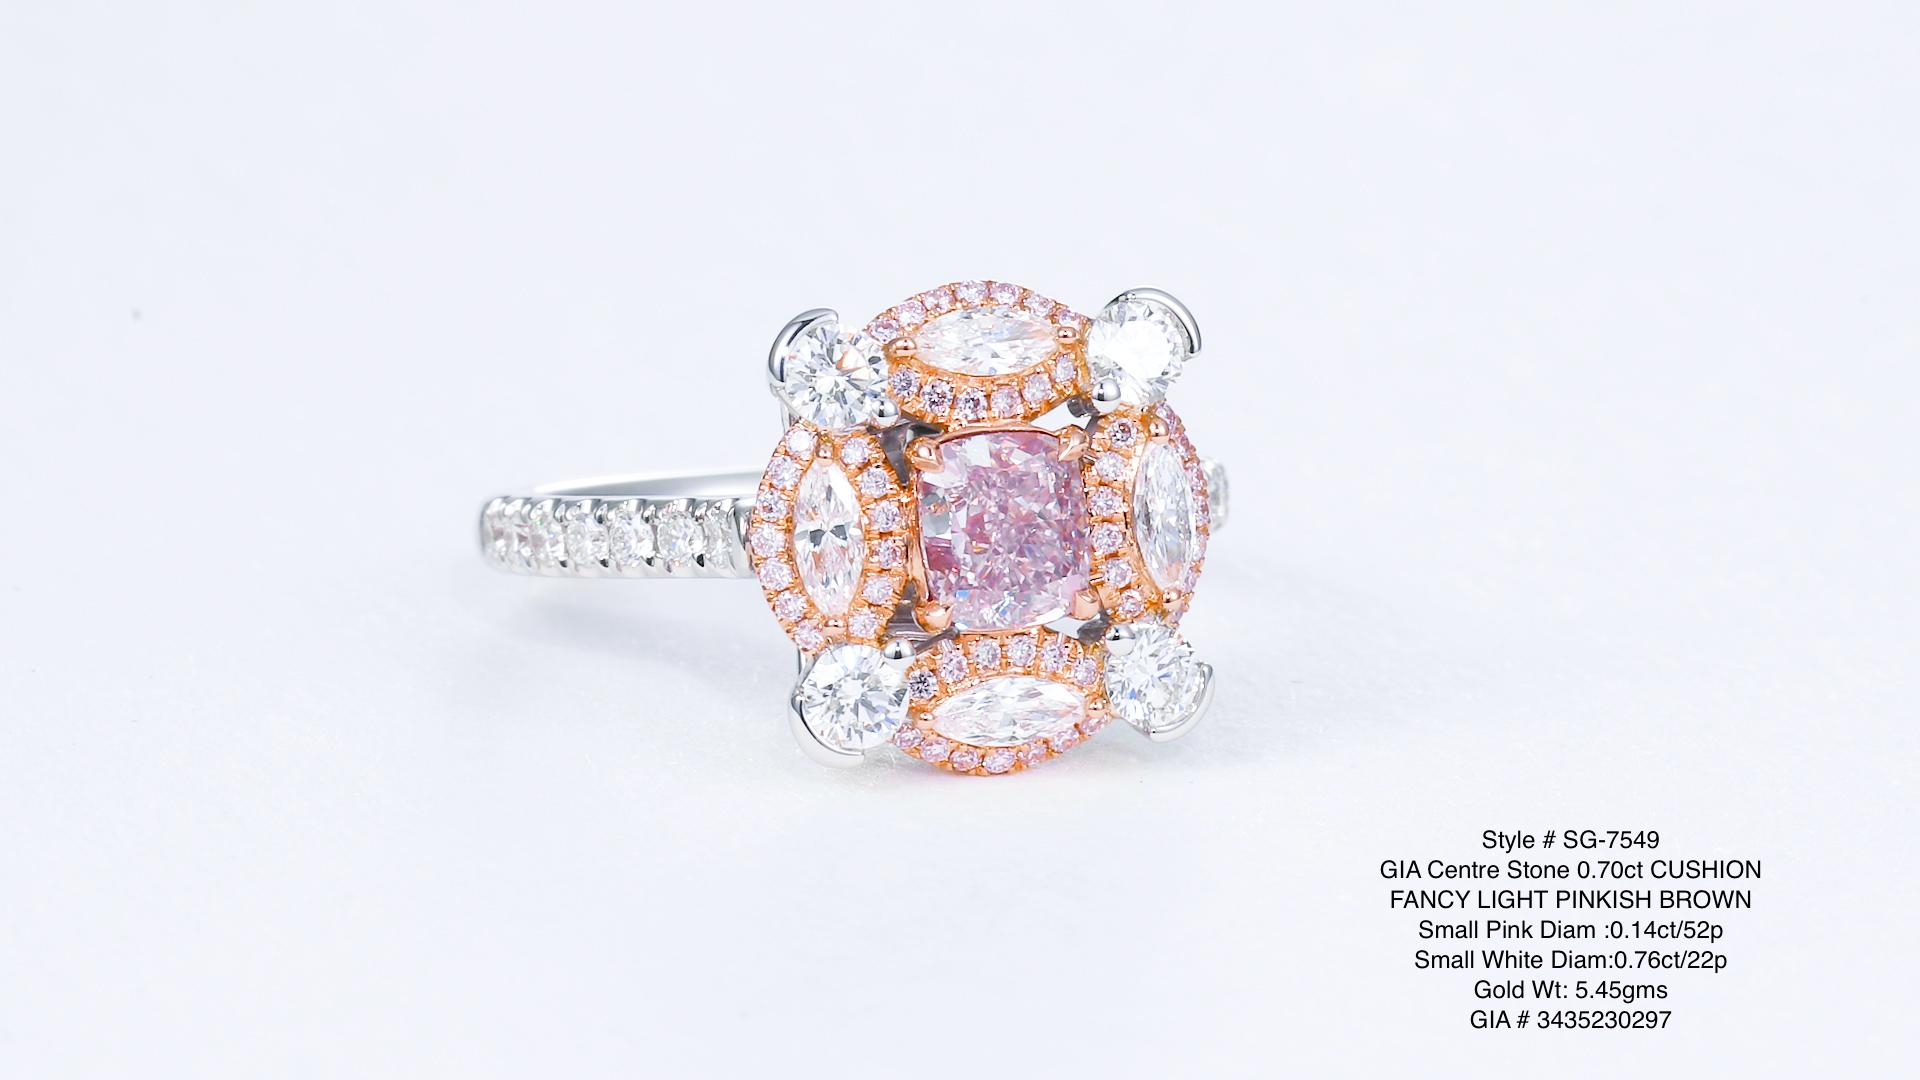 Un trésor captivant : un diamant rose fantaisie naturel de 0,70 ct, délicatement monté sur une bague en or 18kt. Ornée de diamants blancs et roses enchanteurs, cette pierre rare respire l'élégance et le charme. L'attrait des diamants de couleur